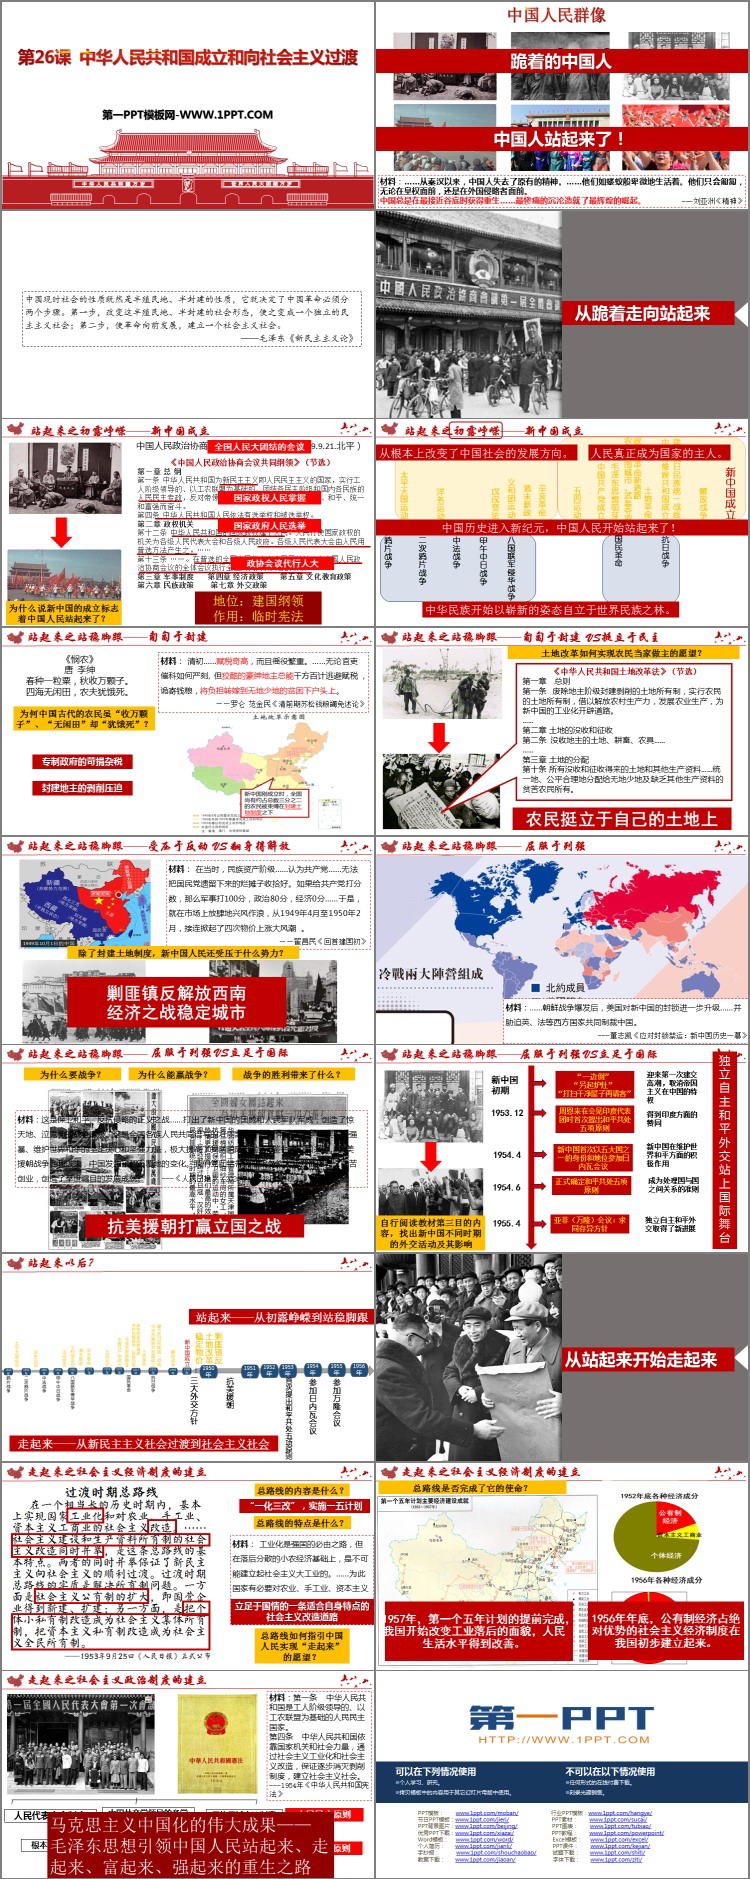 《中华人民共和国成立和向社会主义过渡》PPT免费下载-预览图02